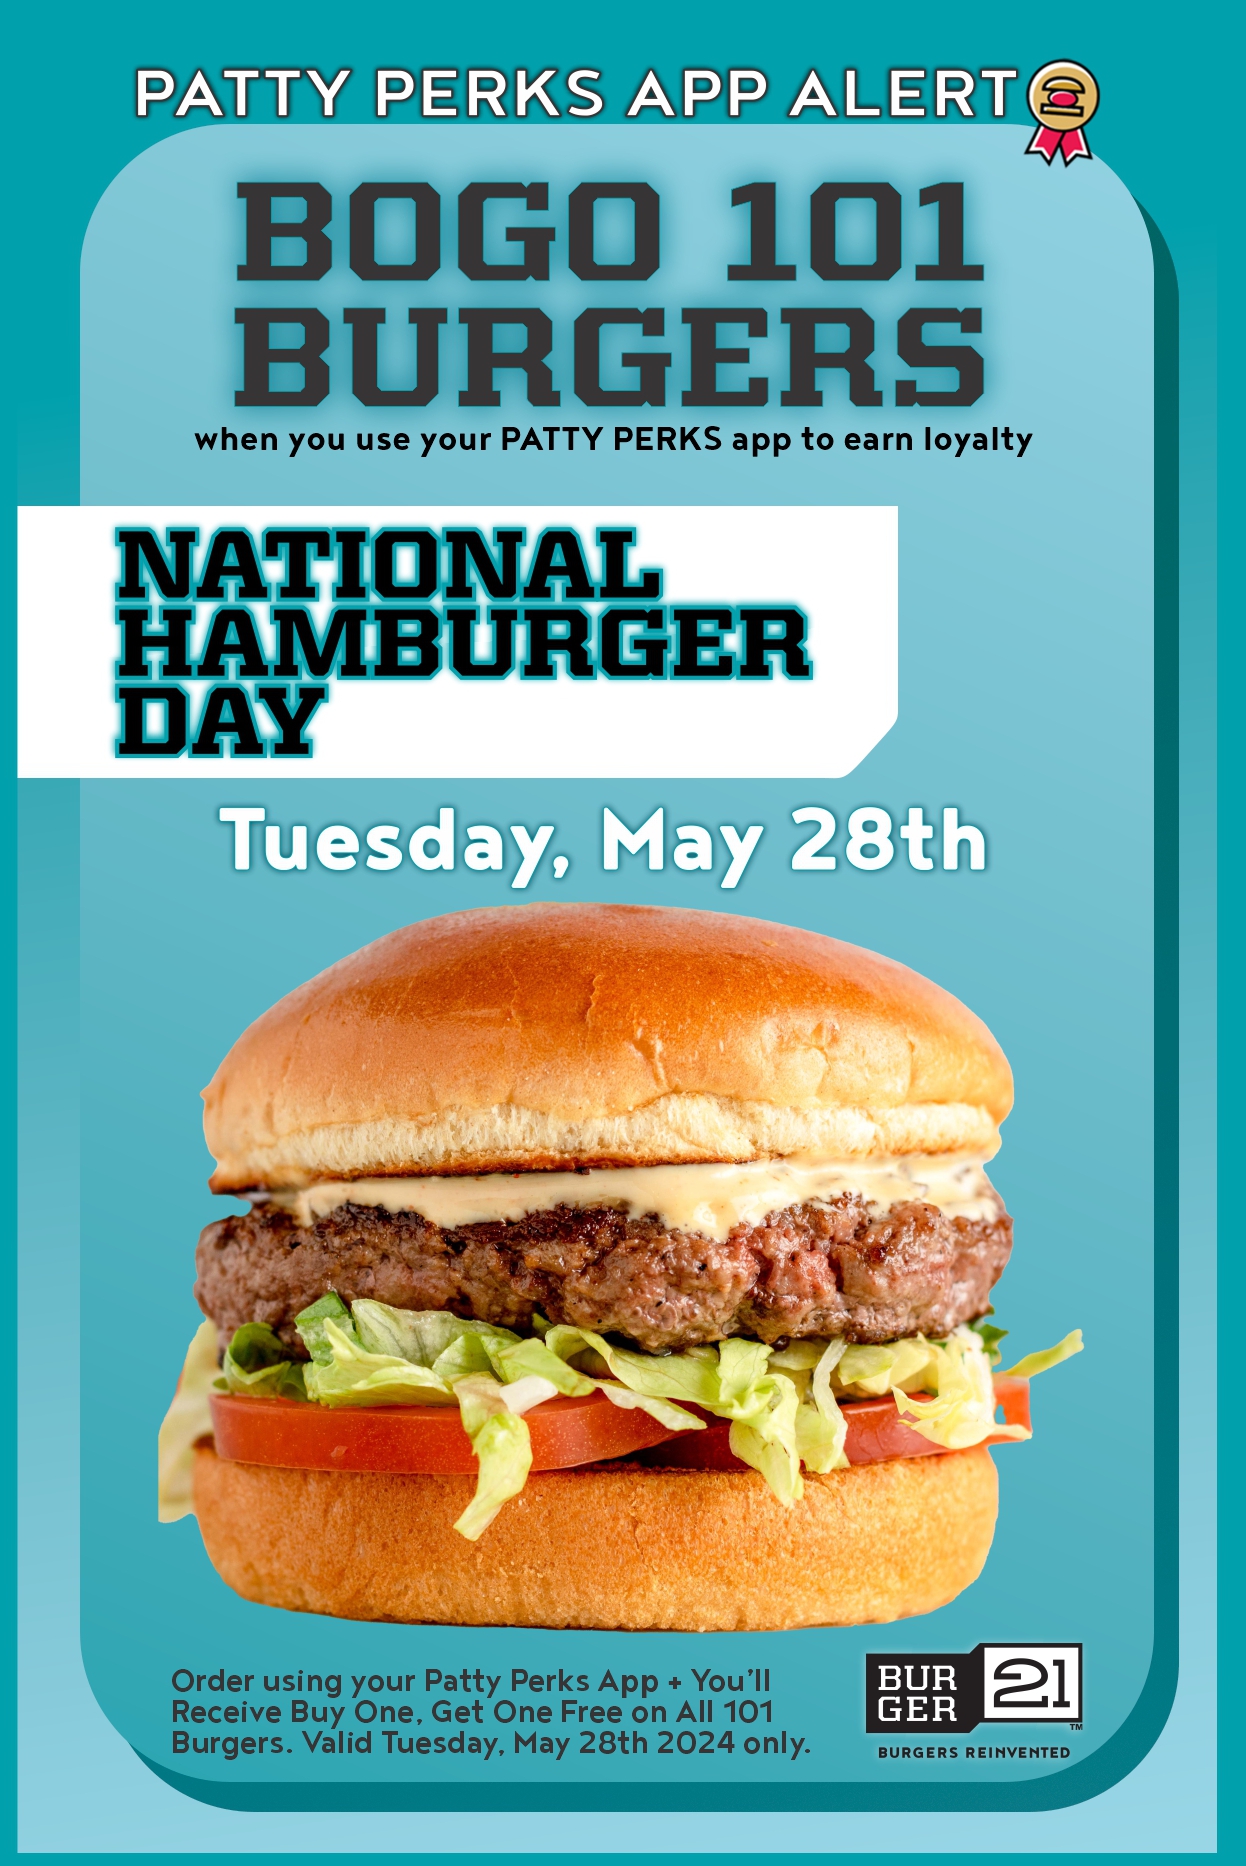 BOGO #101 burgers on National Hamburger Day 